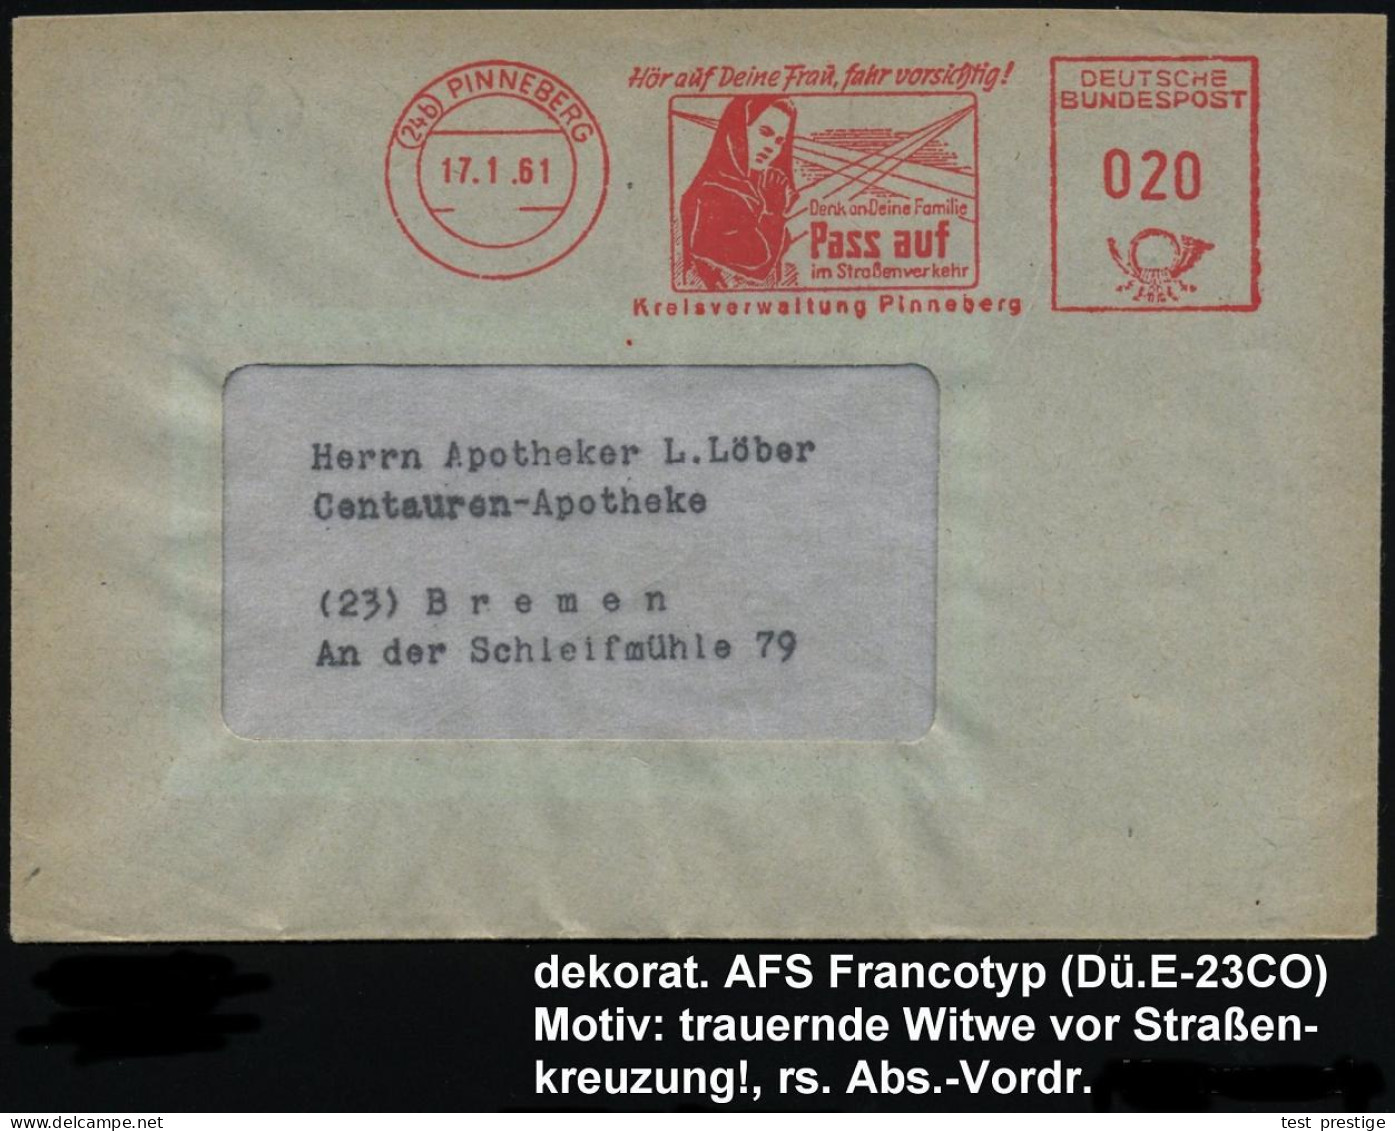 (24b) PINNEBERG/ Hör Auf Deine Frau,fahr Vorsichtig!../ Pass Auf/ Im Strassenverkehr/ Kreisverwaltung 1961 (17.1.) Selte - Accidents & Road Safety